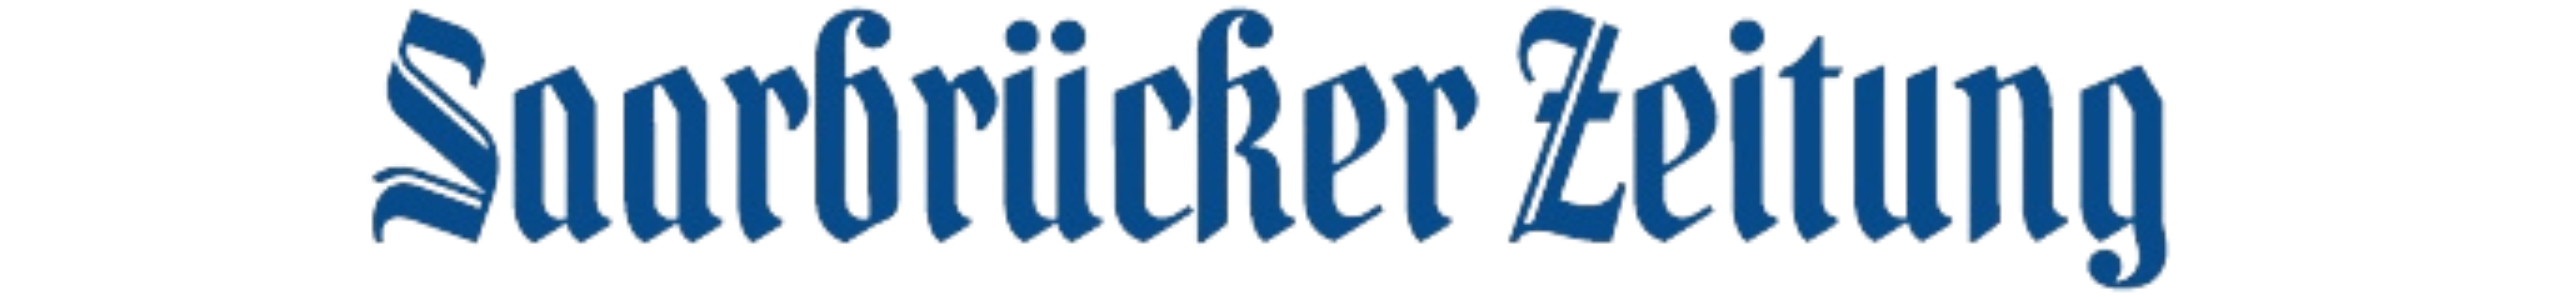 Saarbrücker_Zeitung_Logo